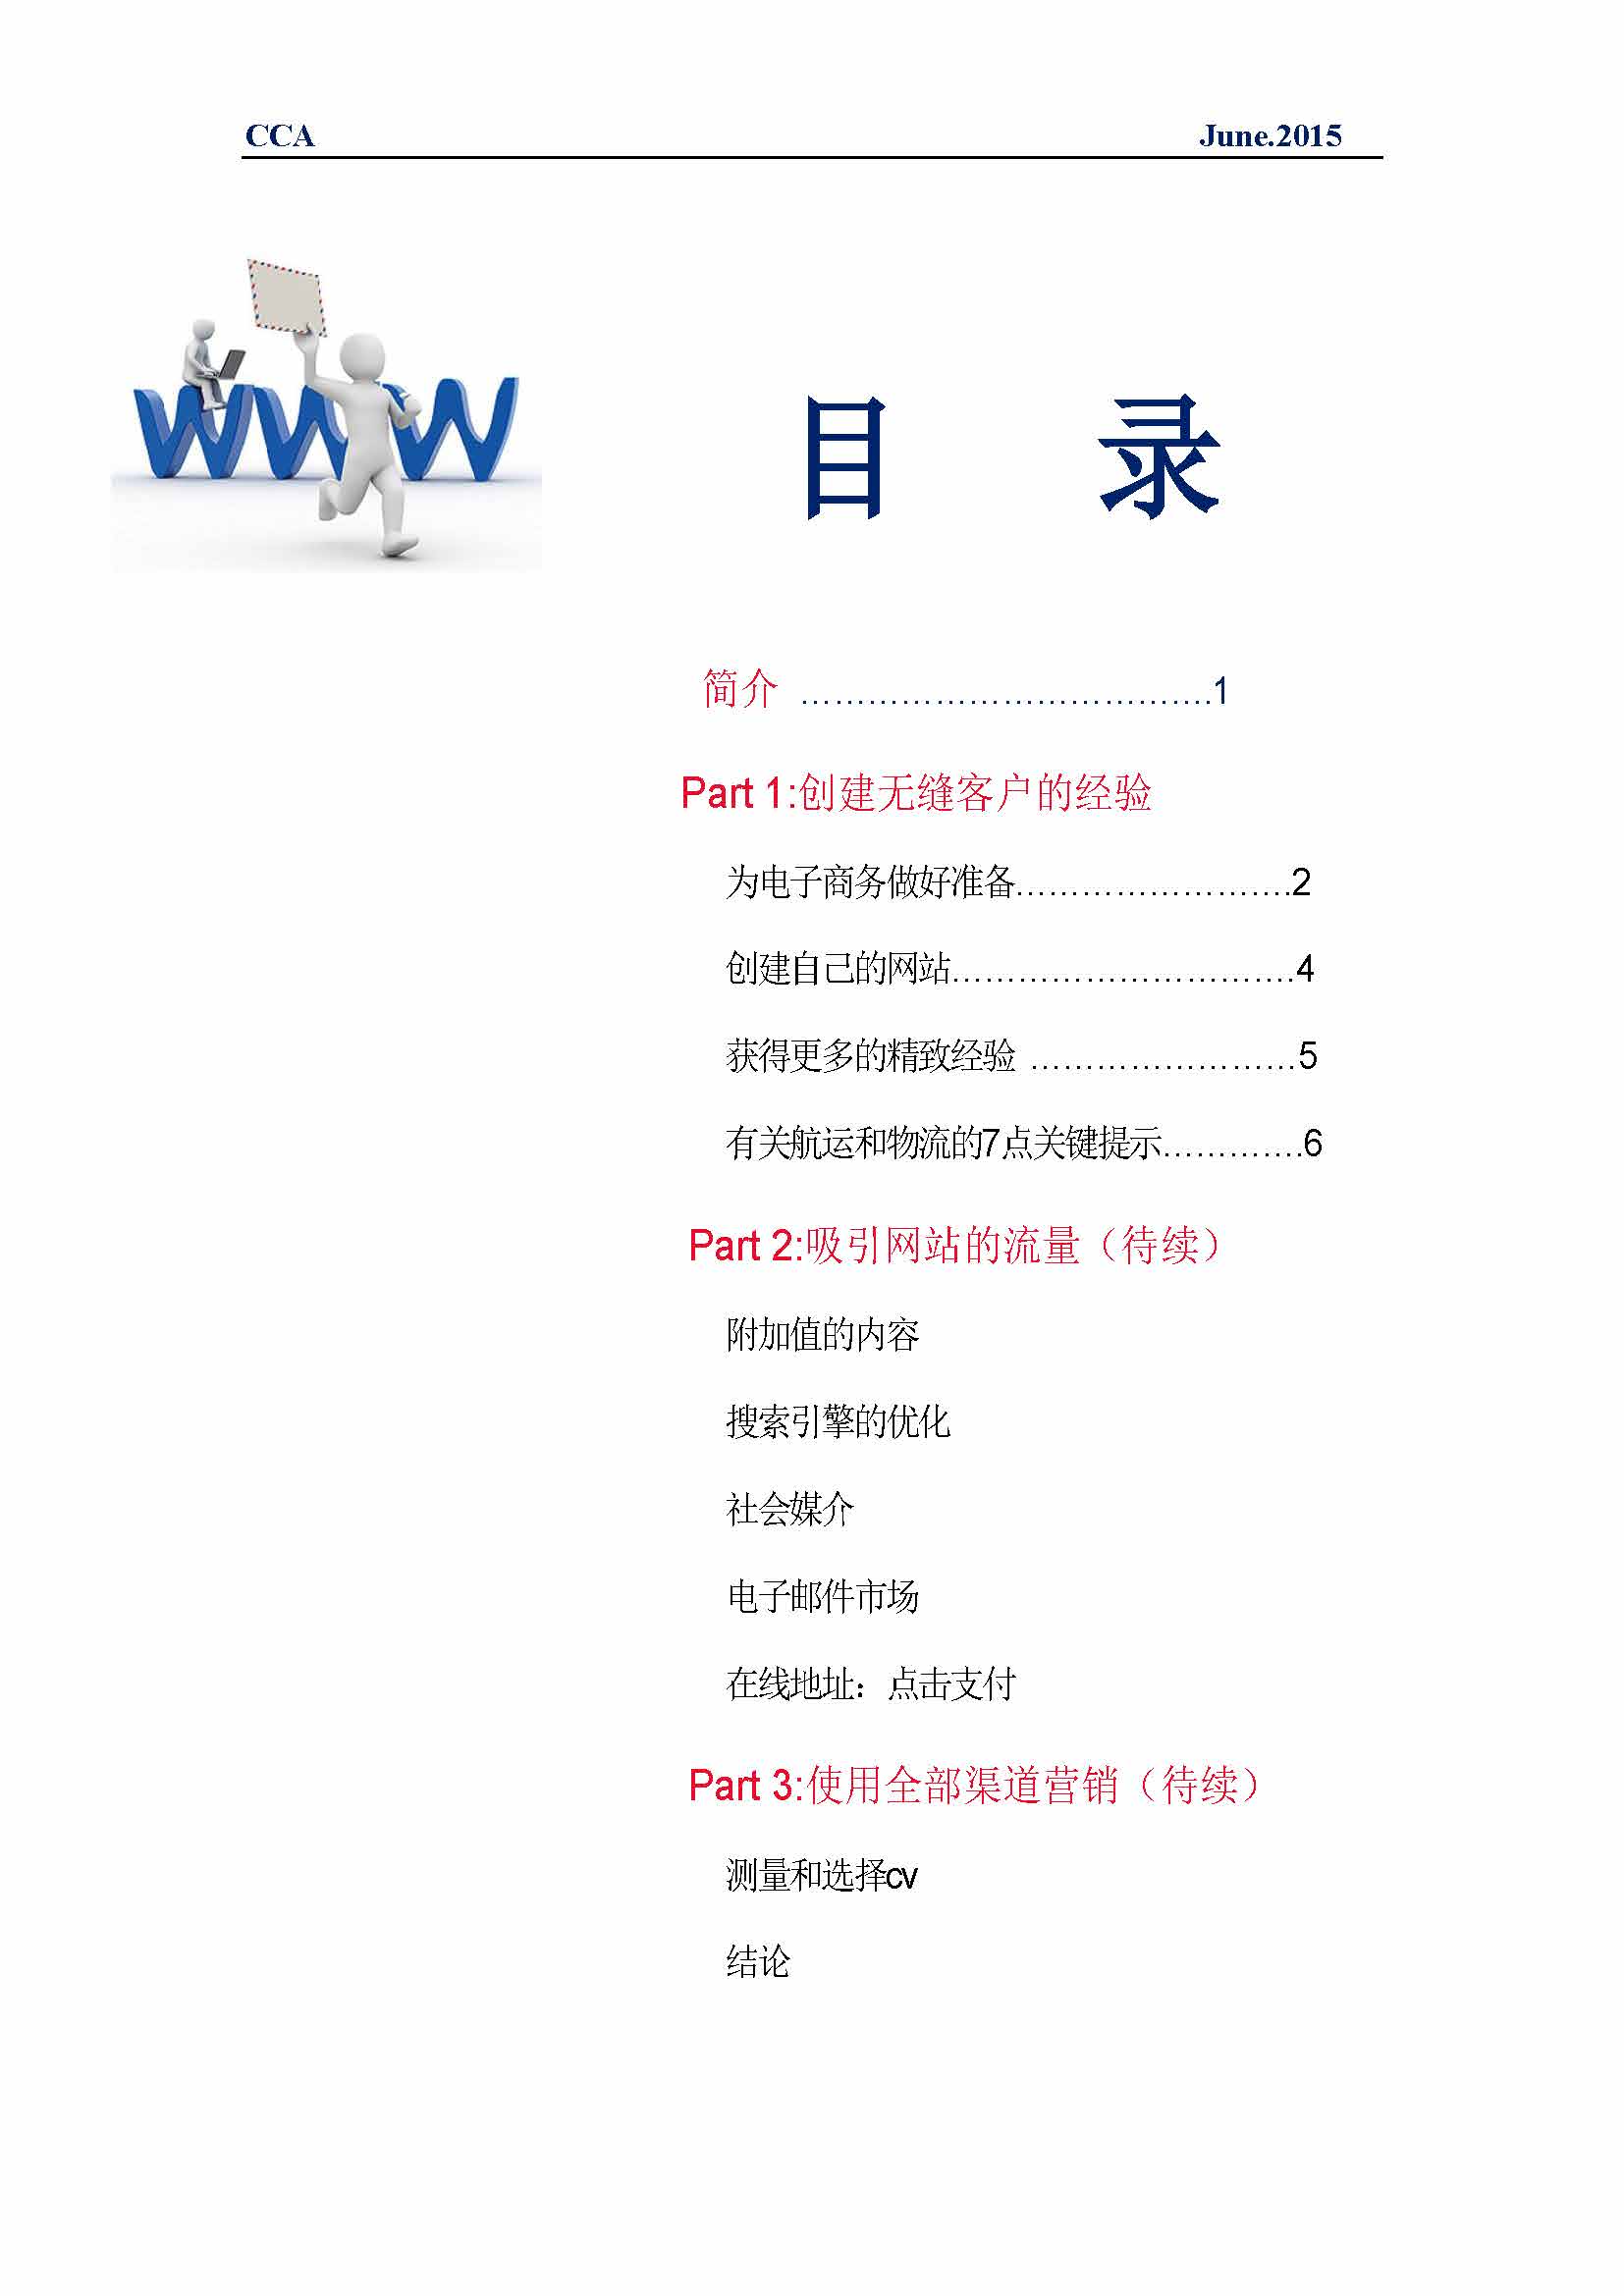 中国科技咨询协会国际快讯（第二十四期）_页面_03.jpg